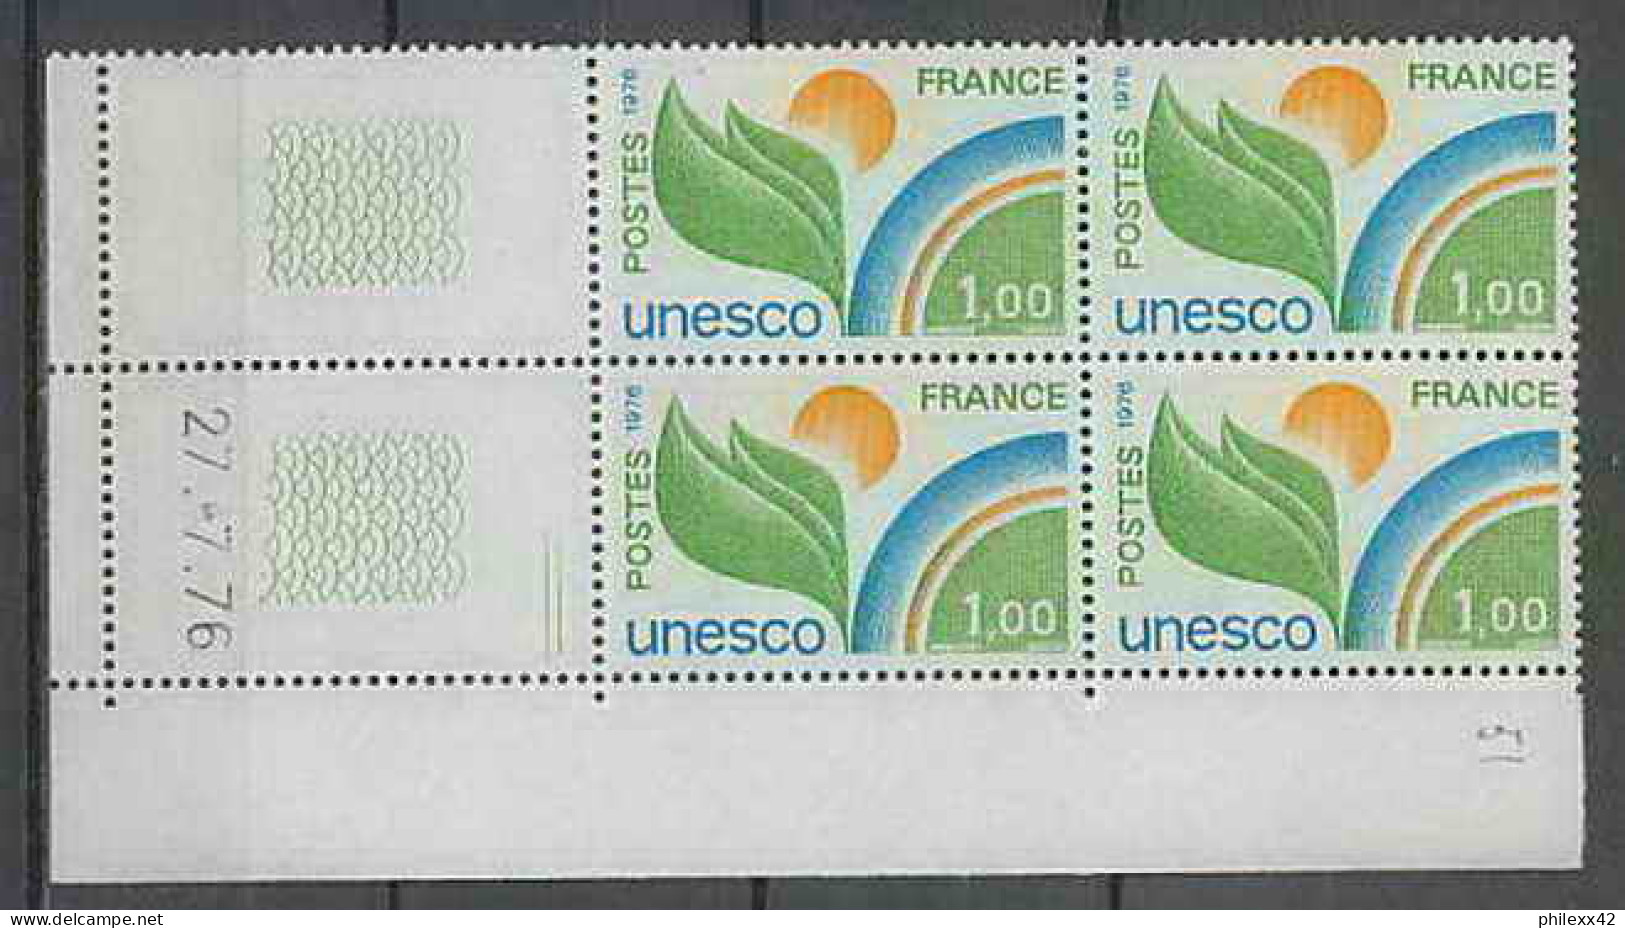 1308 - France - Coin Daté TB Neuf ** Service Unesco N°51 Date 27/7/1976 2 Traits  - Servicio